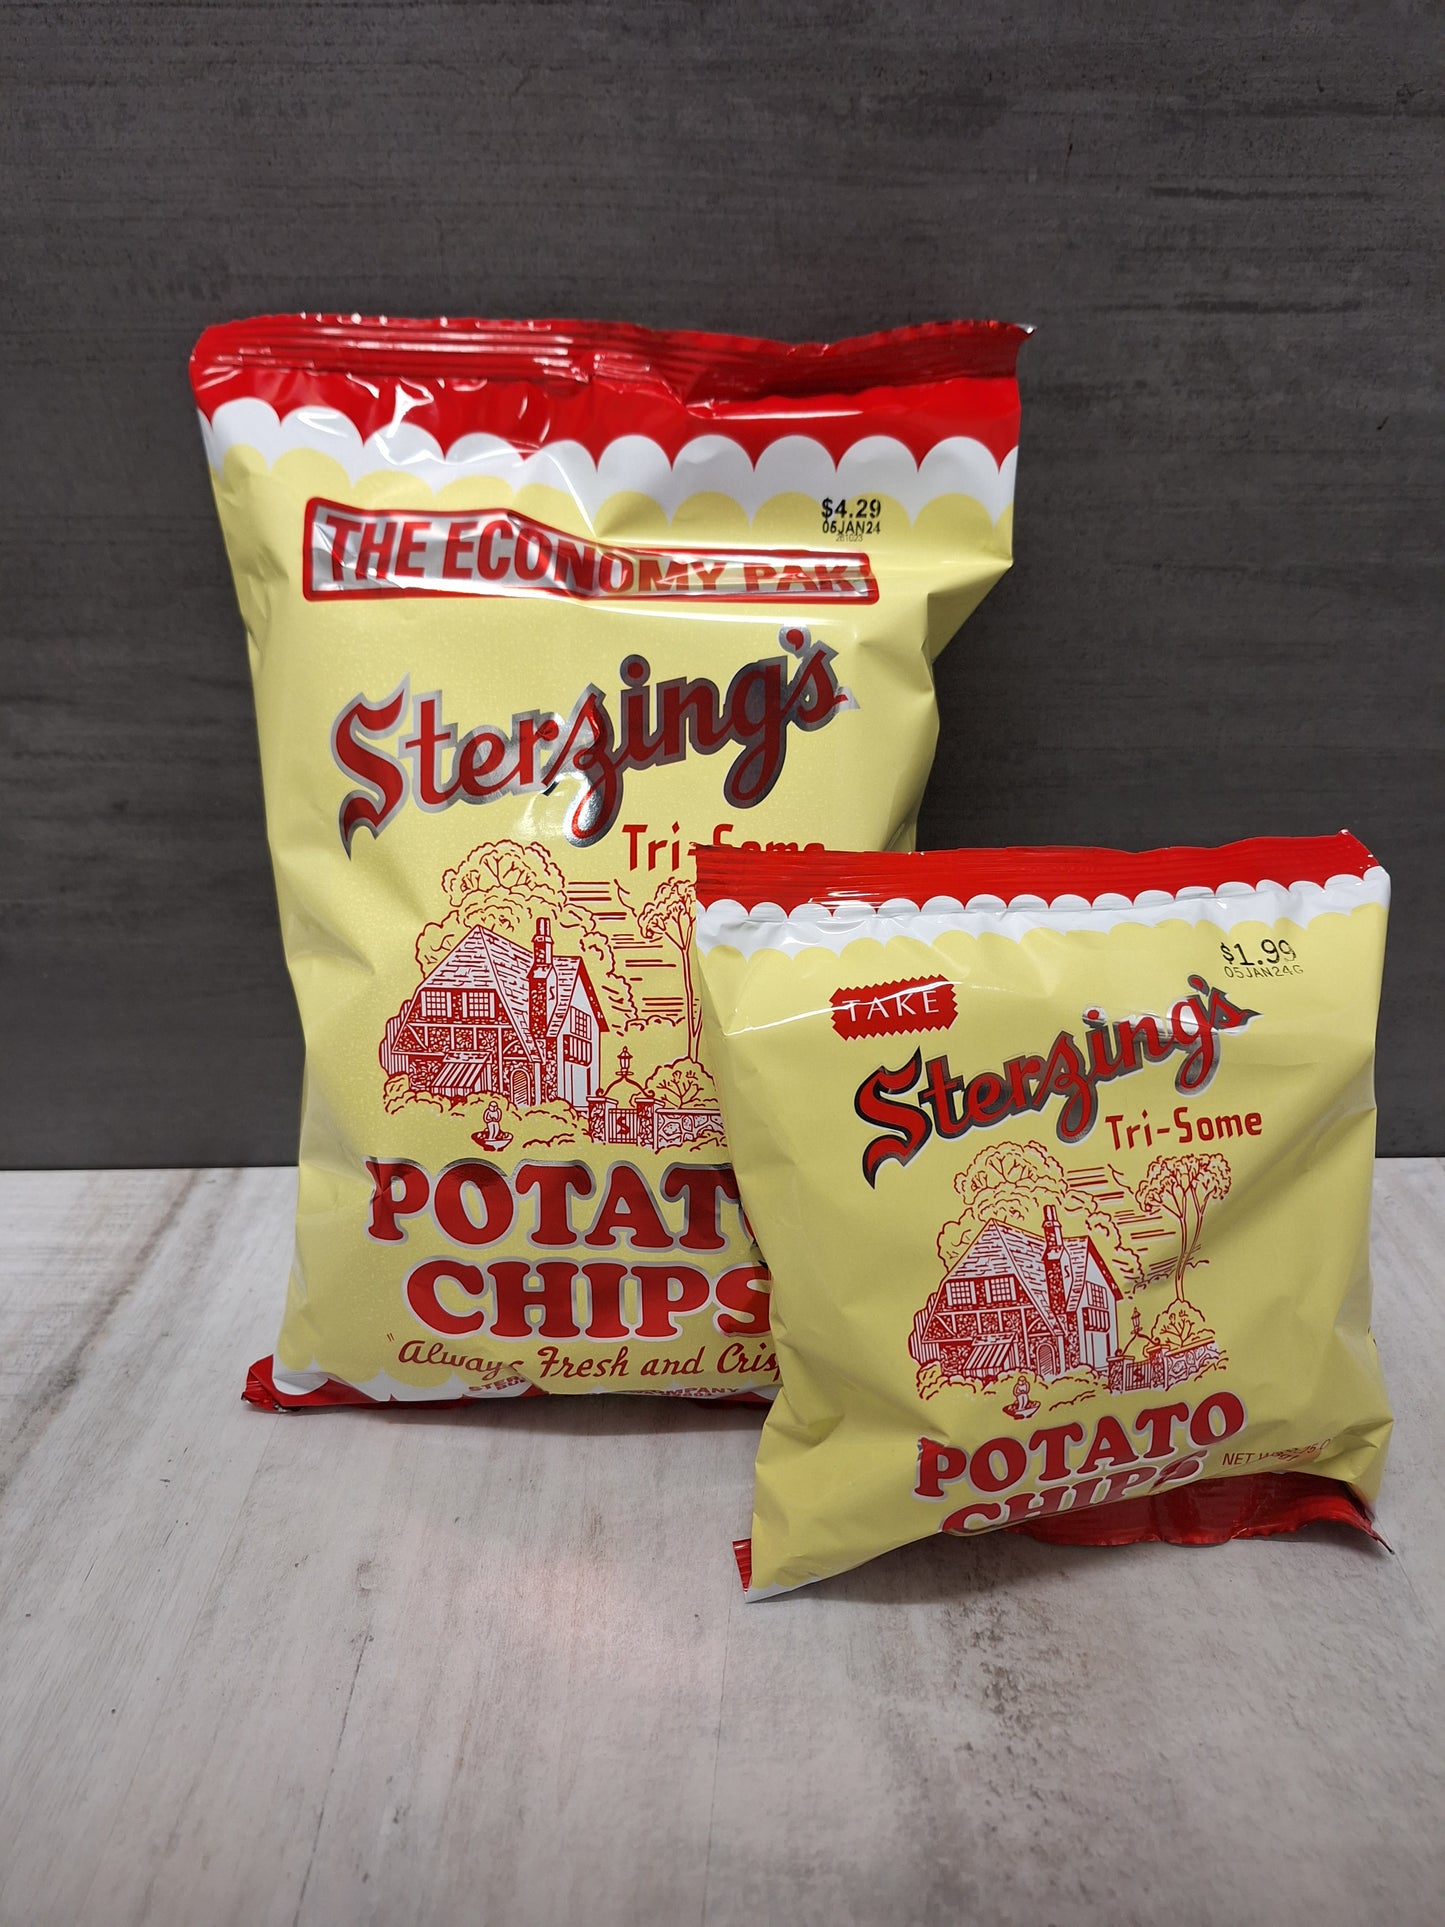 Sterzing’s Potato Chips